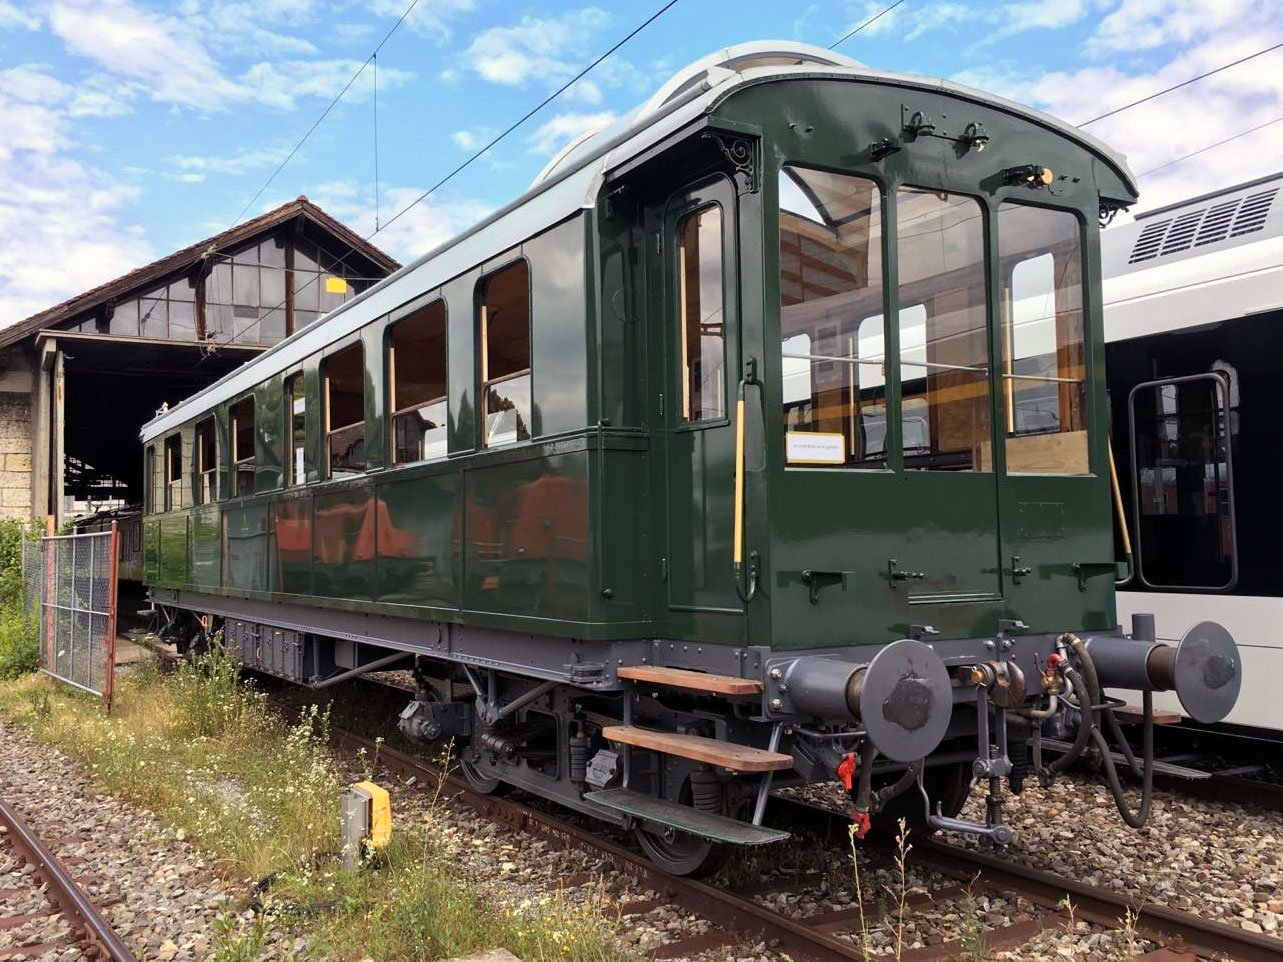 Dynamometerwagen Xd4ue 99701 gruen_Historic Rail Services_14 7 21